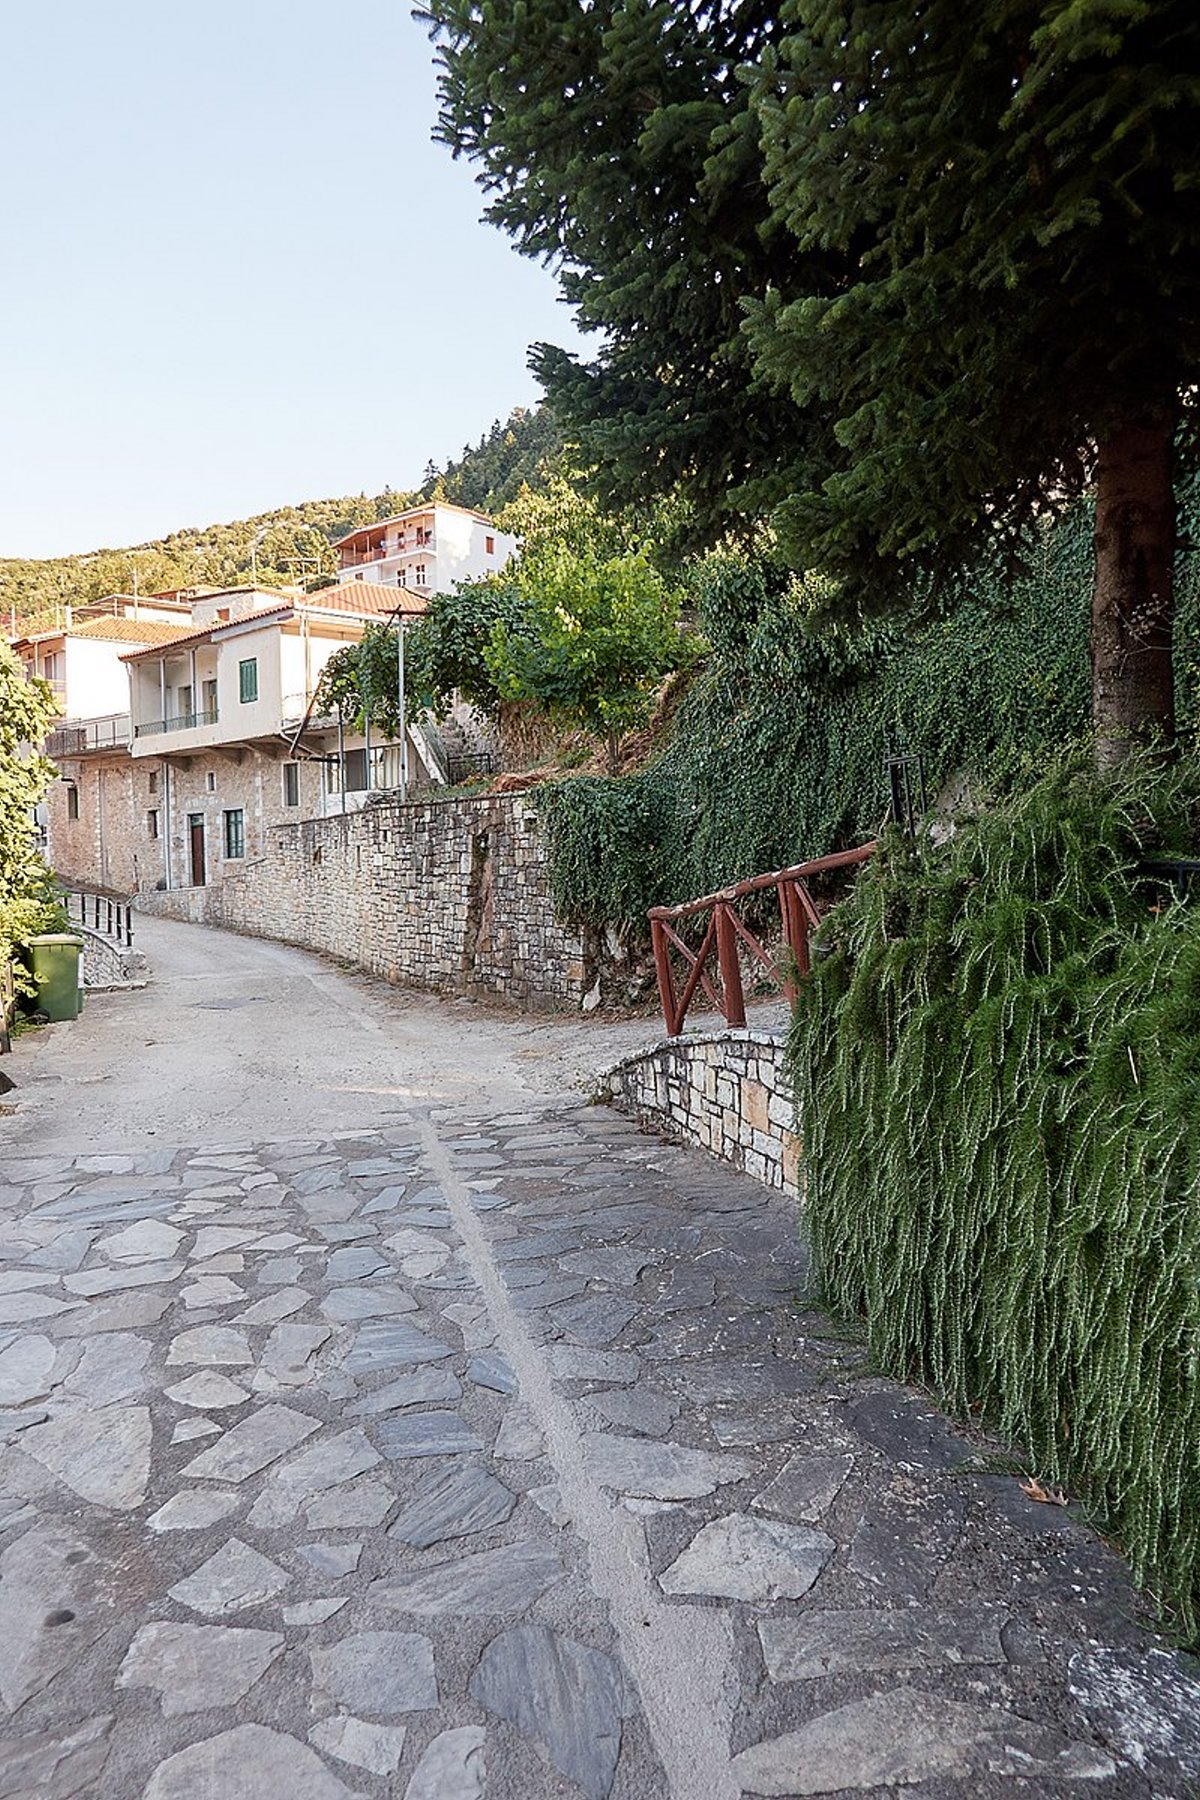 Σίταινα: Το "άσημο" χωριό της Πελοποννήσου μέσα στα έλατα, φυσικό "μνημείο" του Πάρνωνα! (βίντεο)